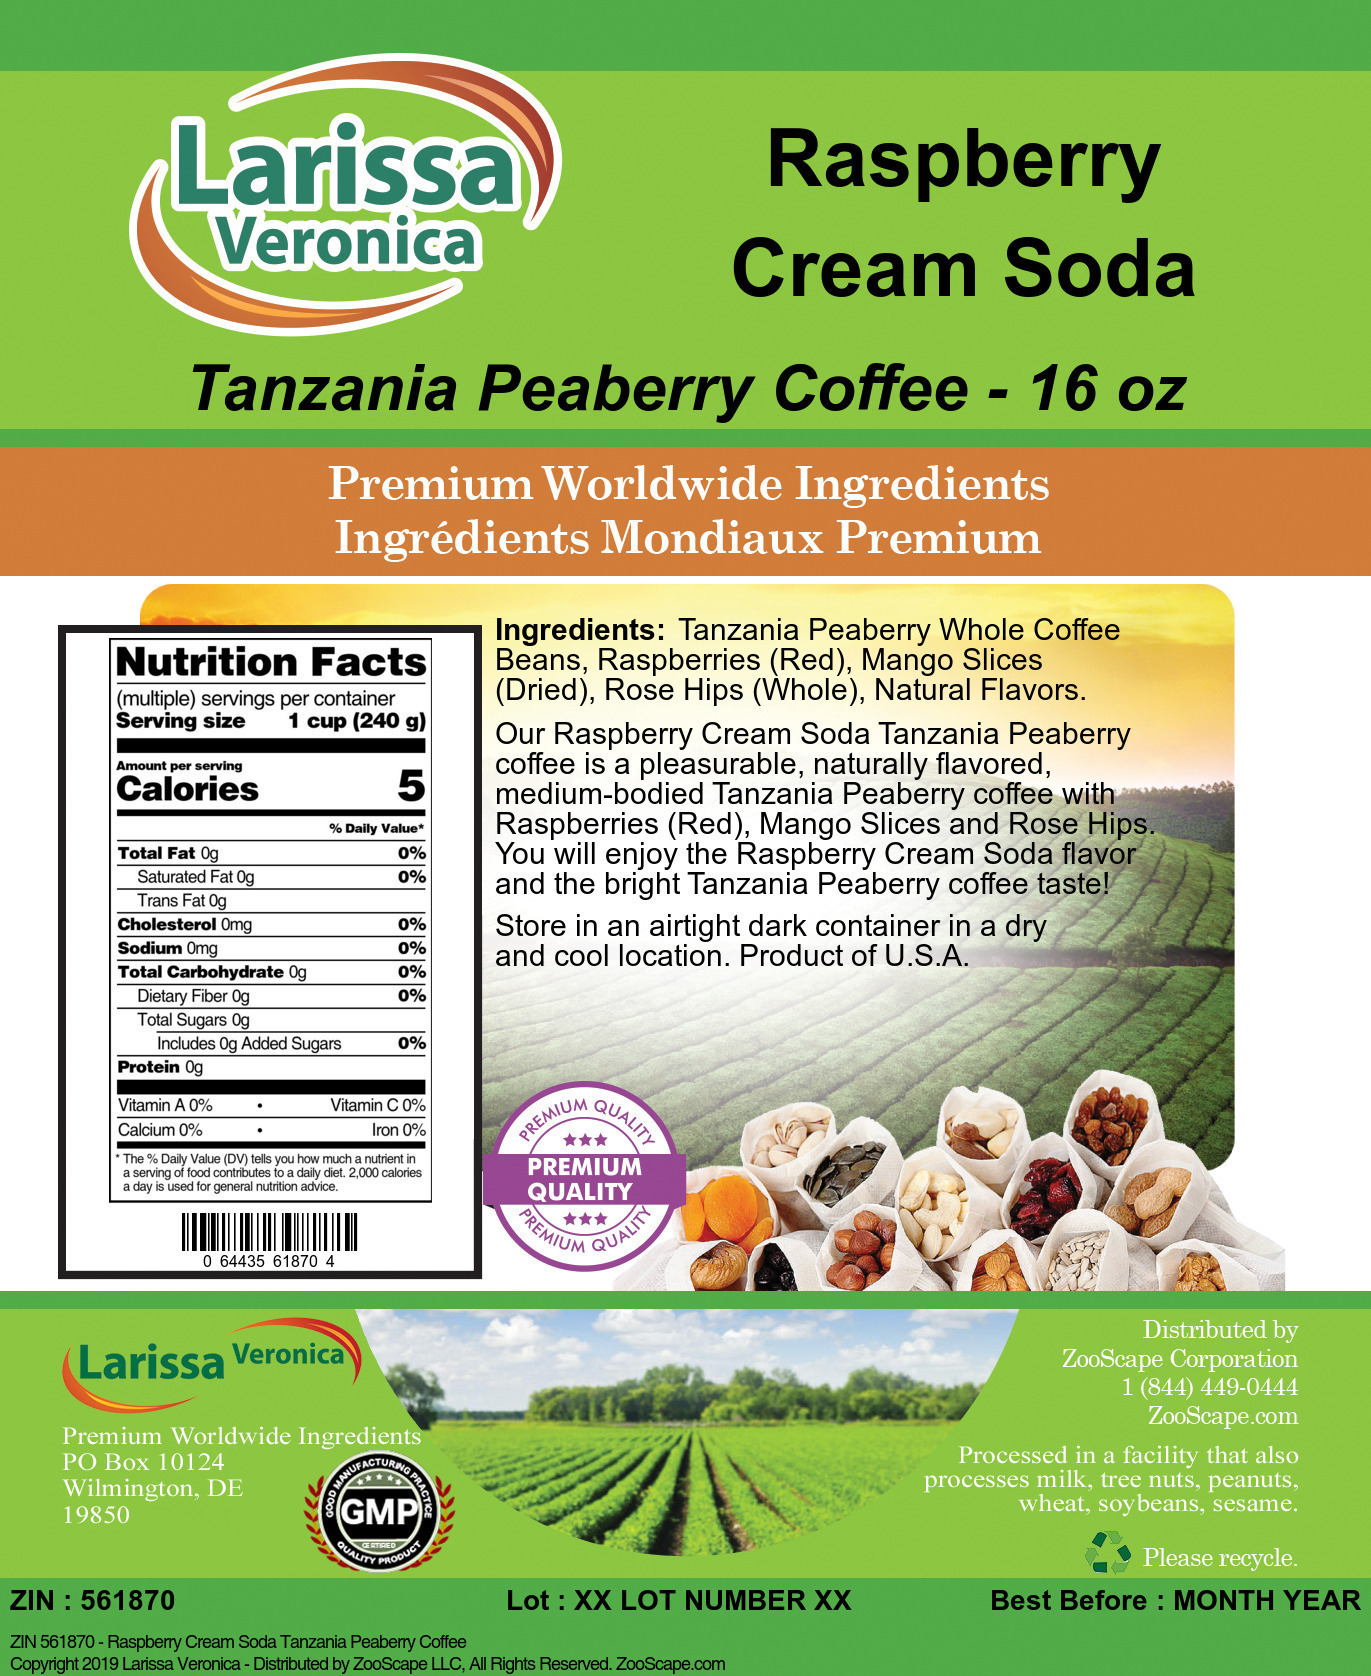 Raspberry Cream Soda Tanzania Peaberry Coffee - Label